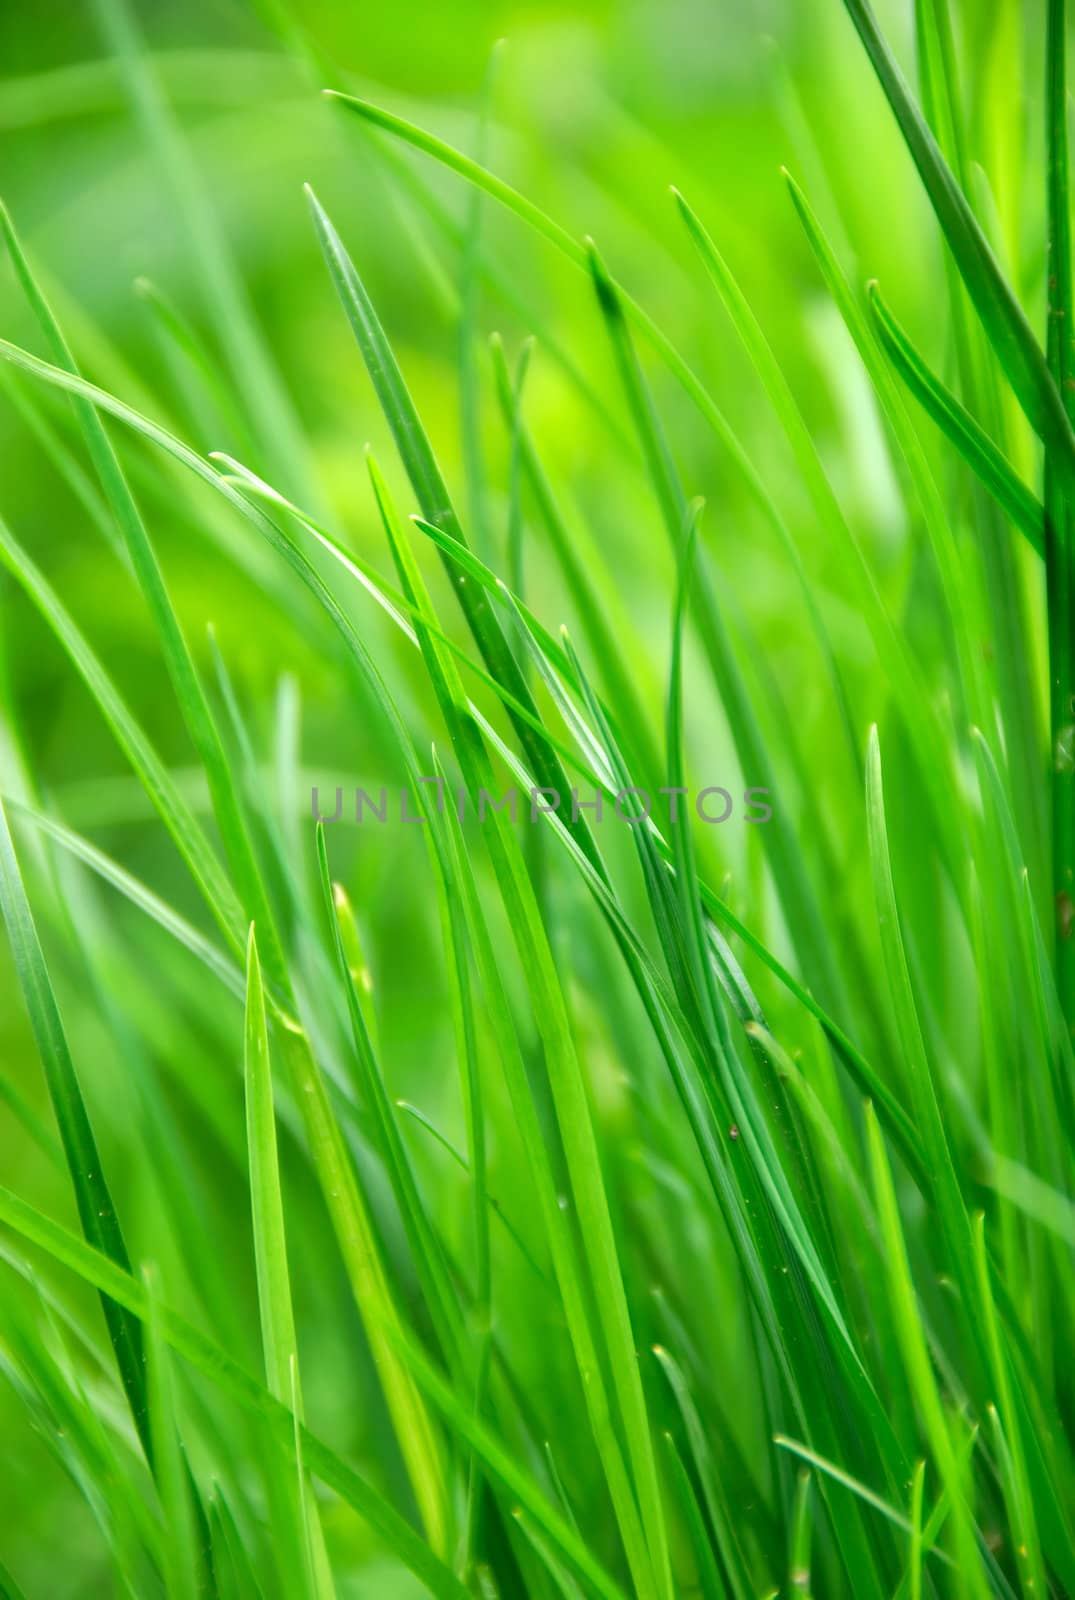 green grass in summer sun by anki21